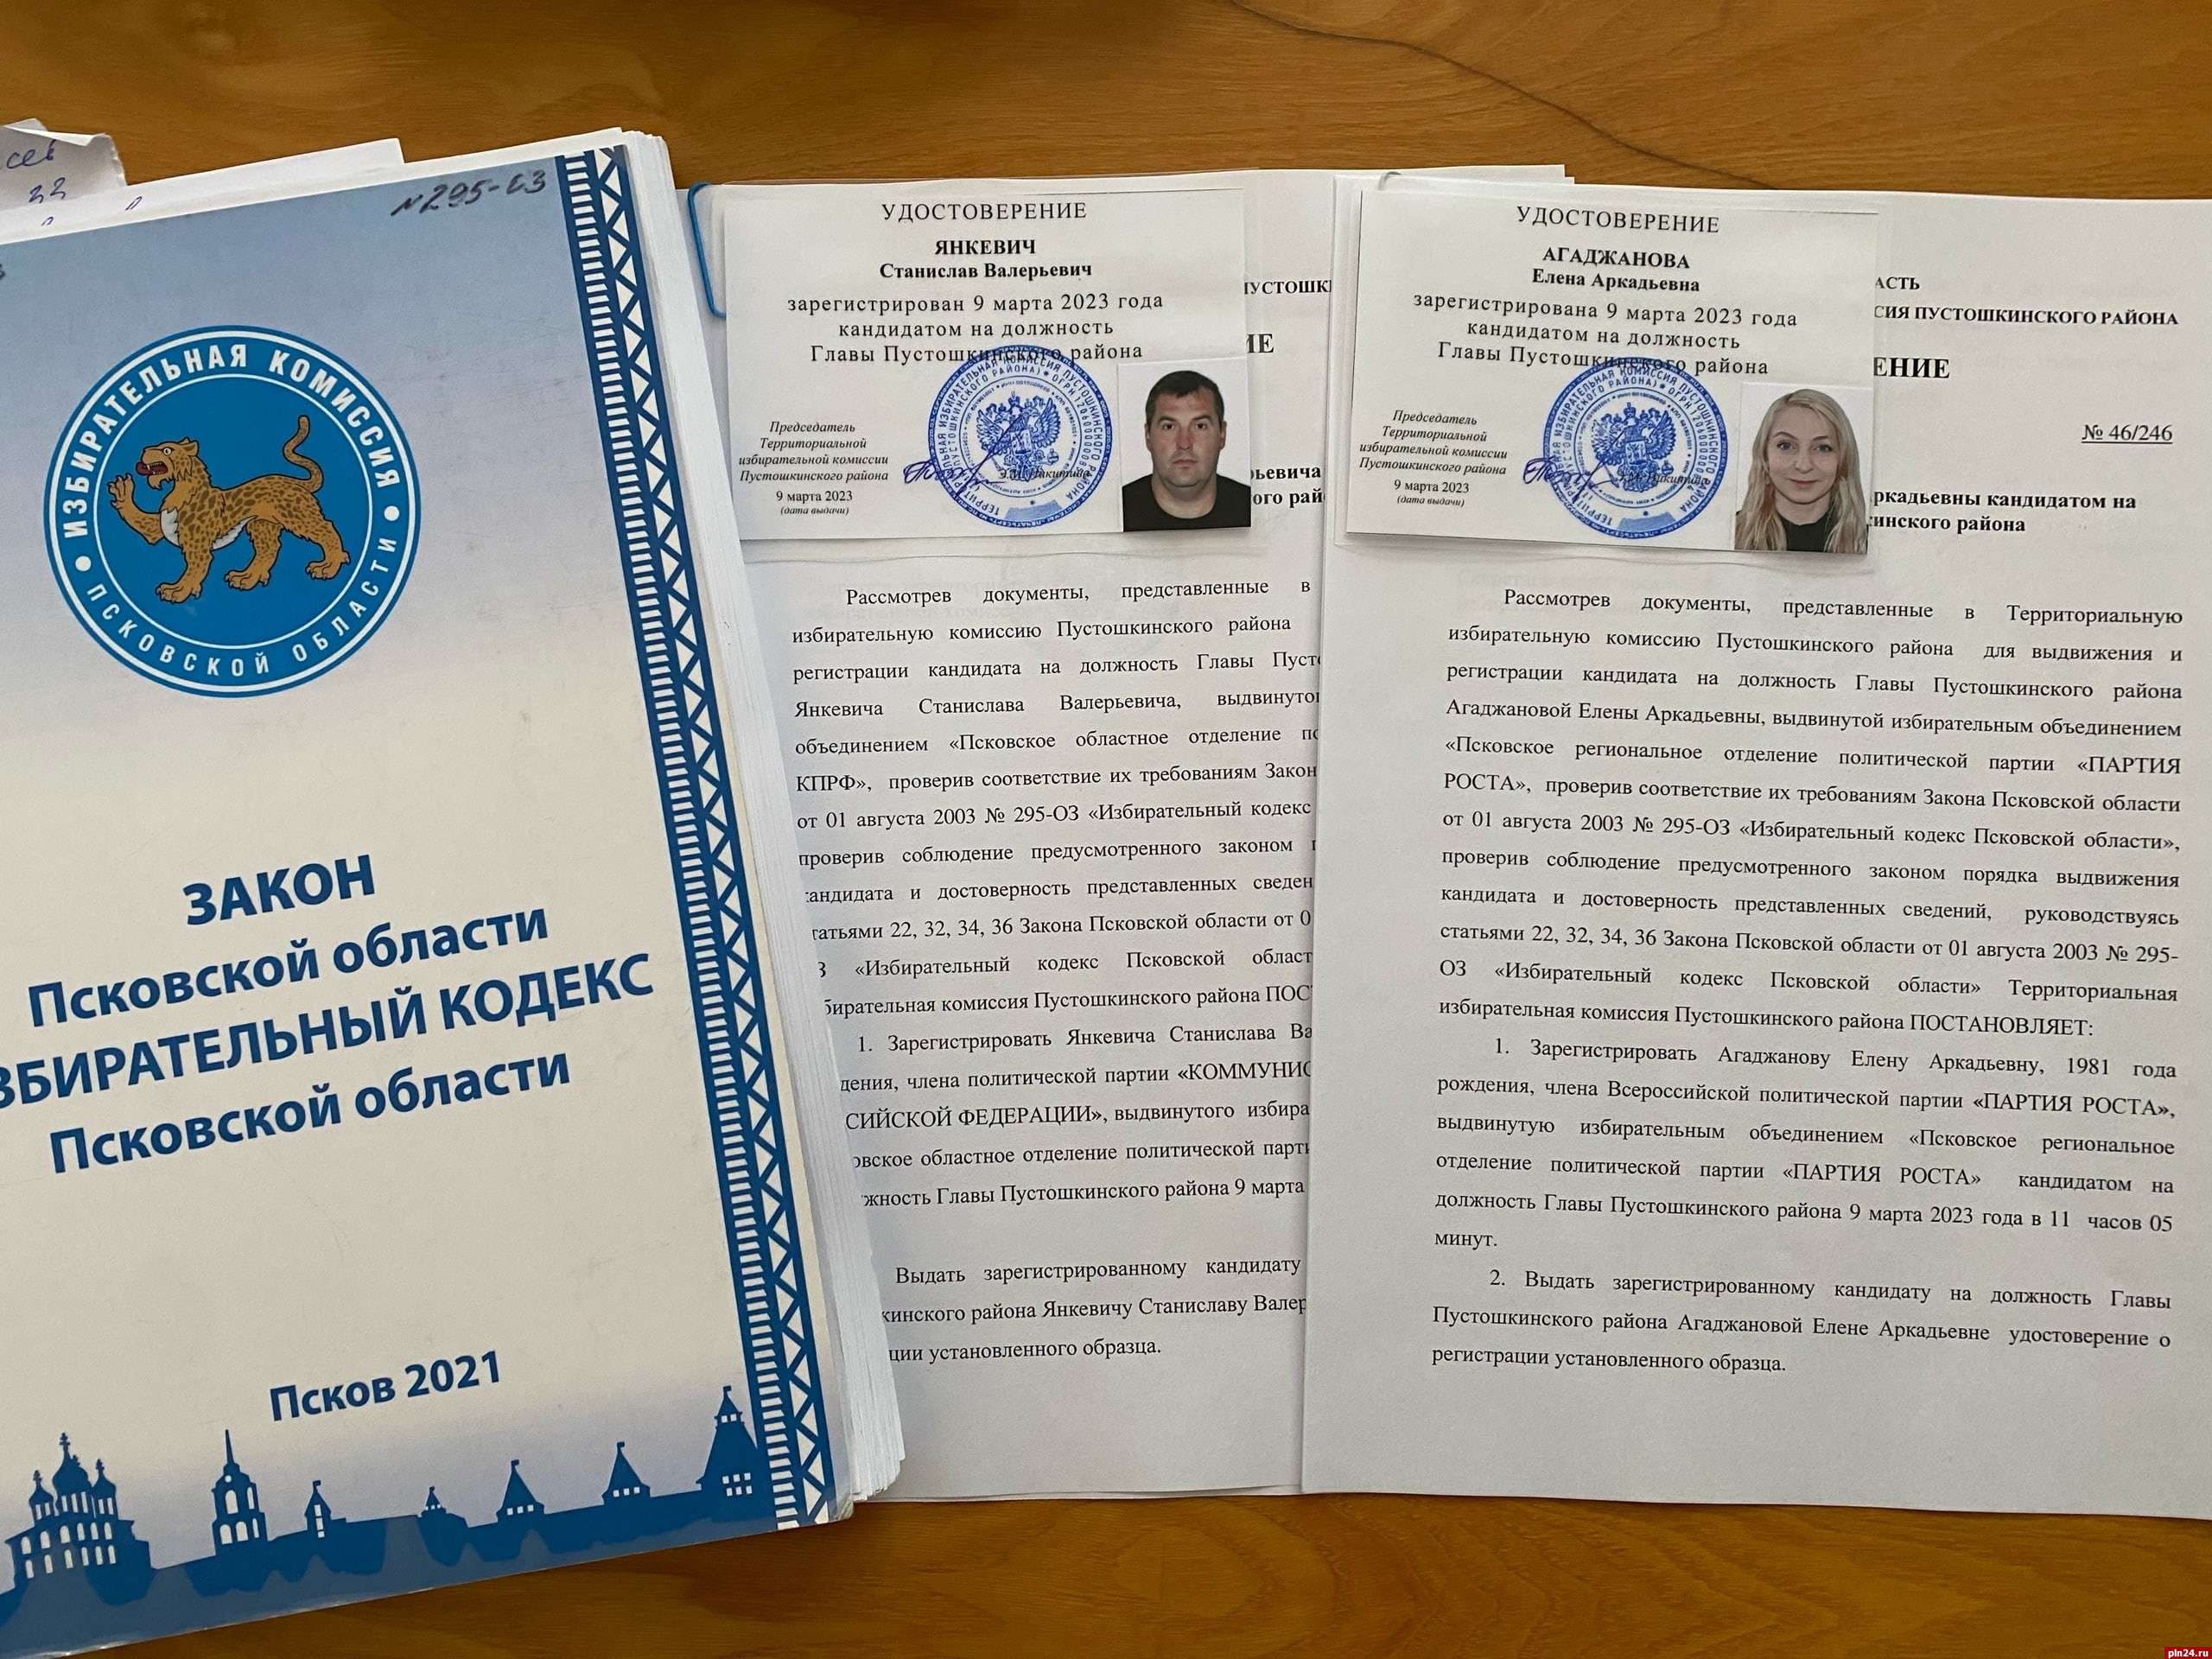 Выдвиженцы от КПРФ и «Партии роста» получили удостоверения кандидатов на выборы главы Пустошкинского района